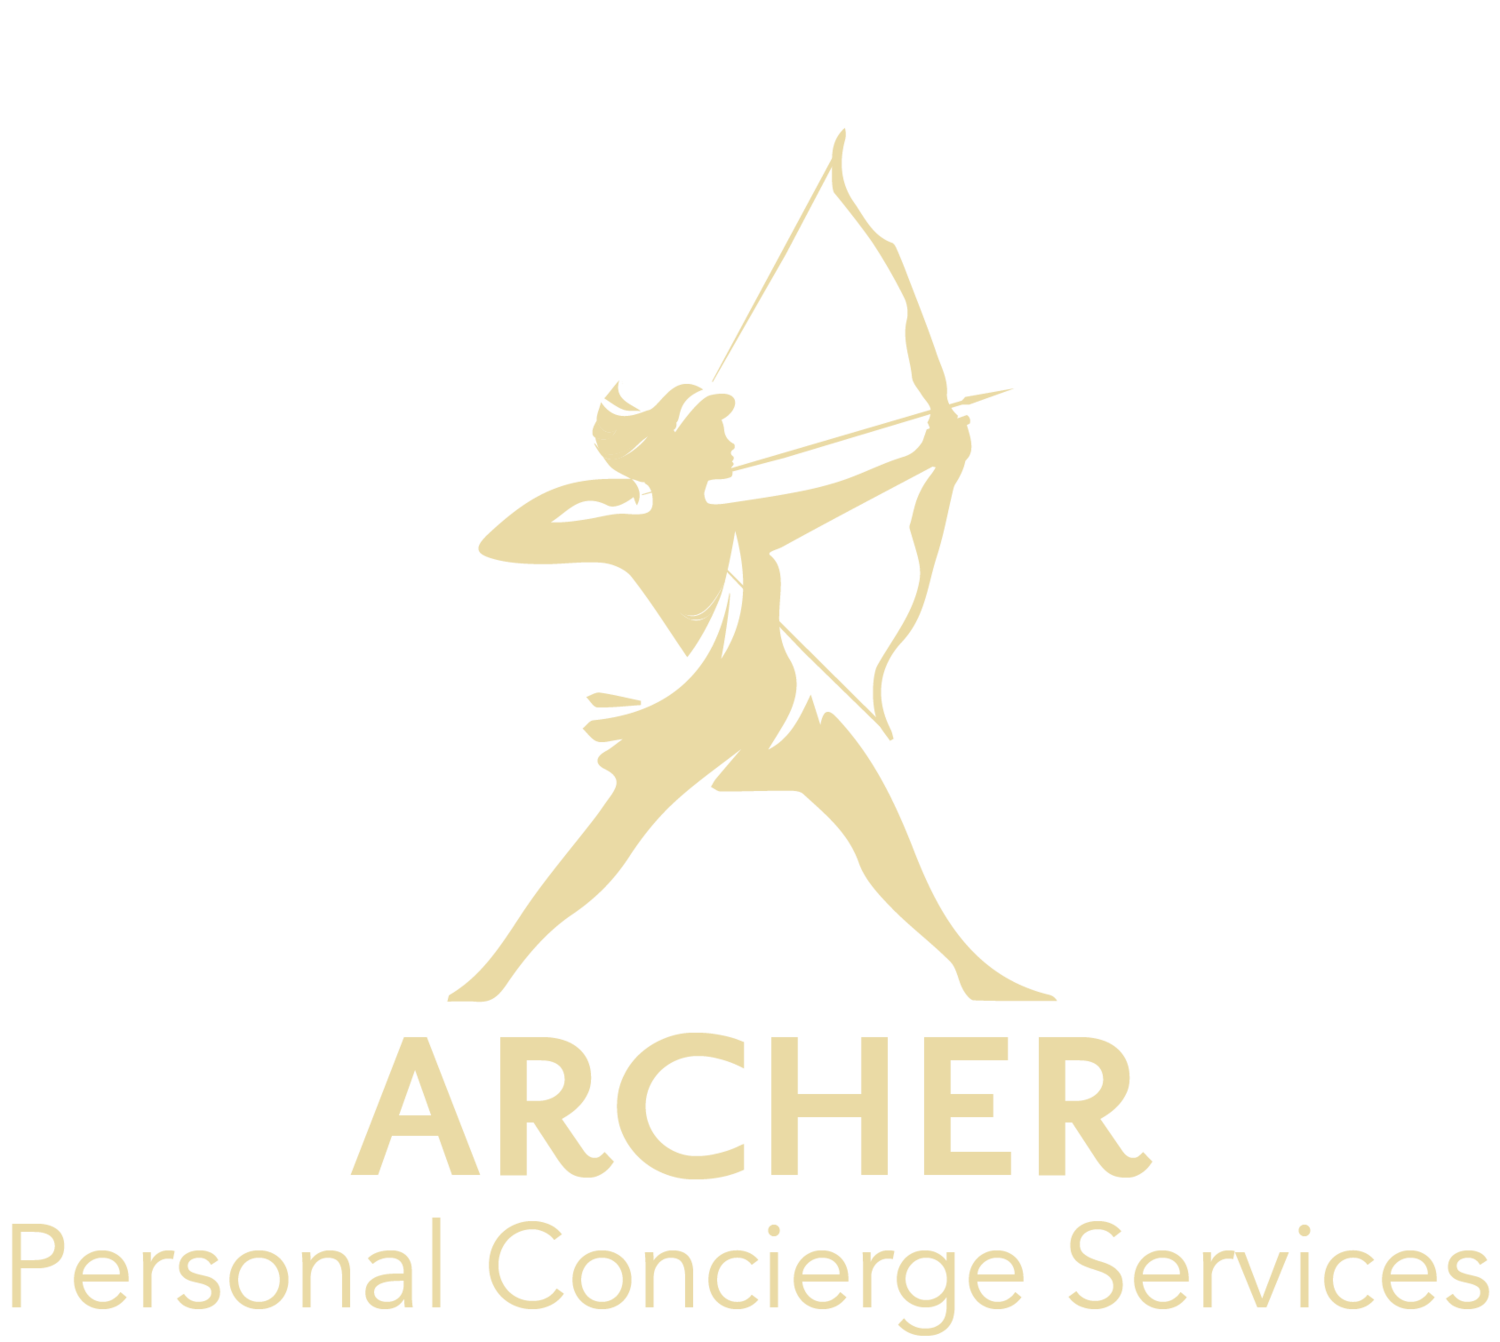 ARCHER PERSONAL CONCIERGE SERVICES